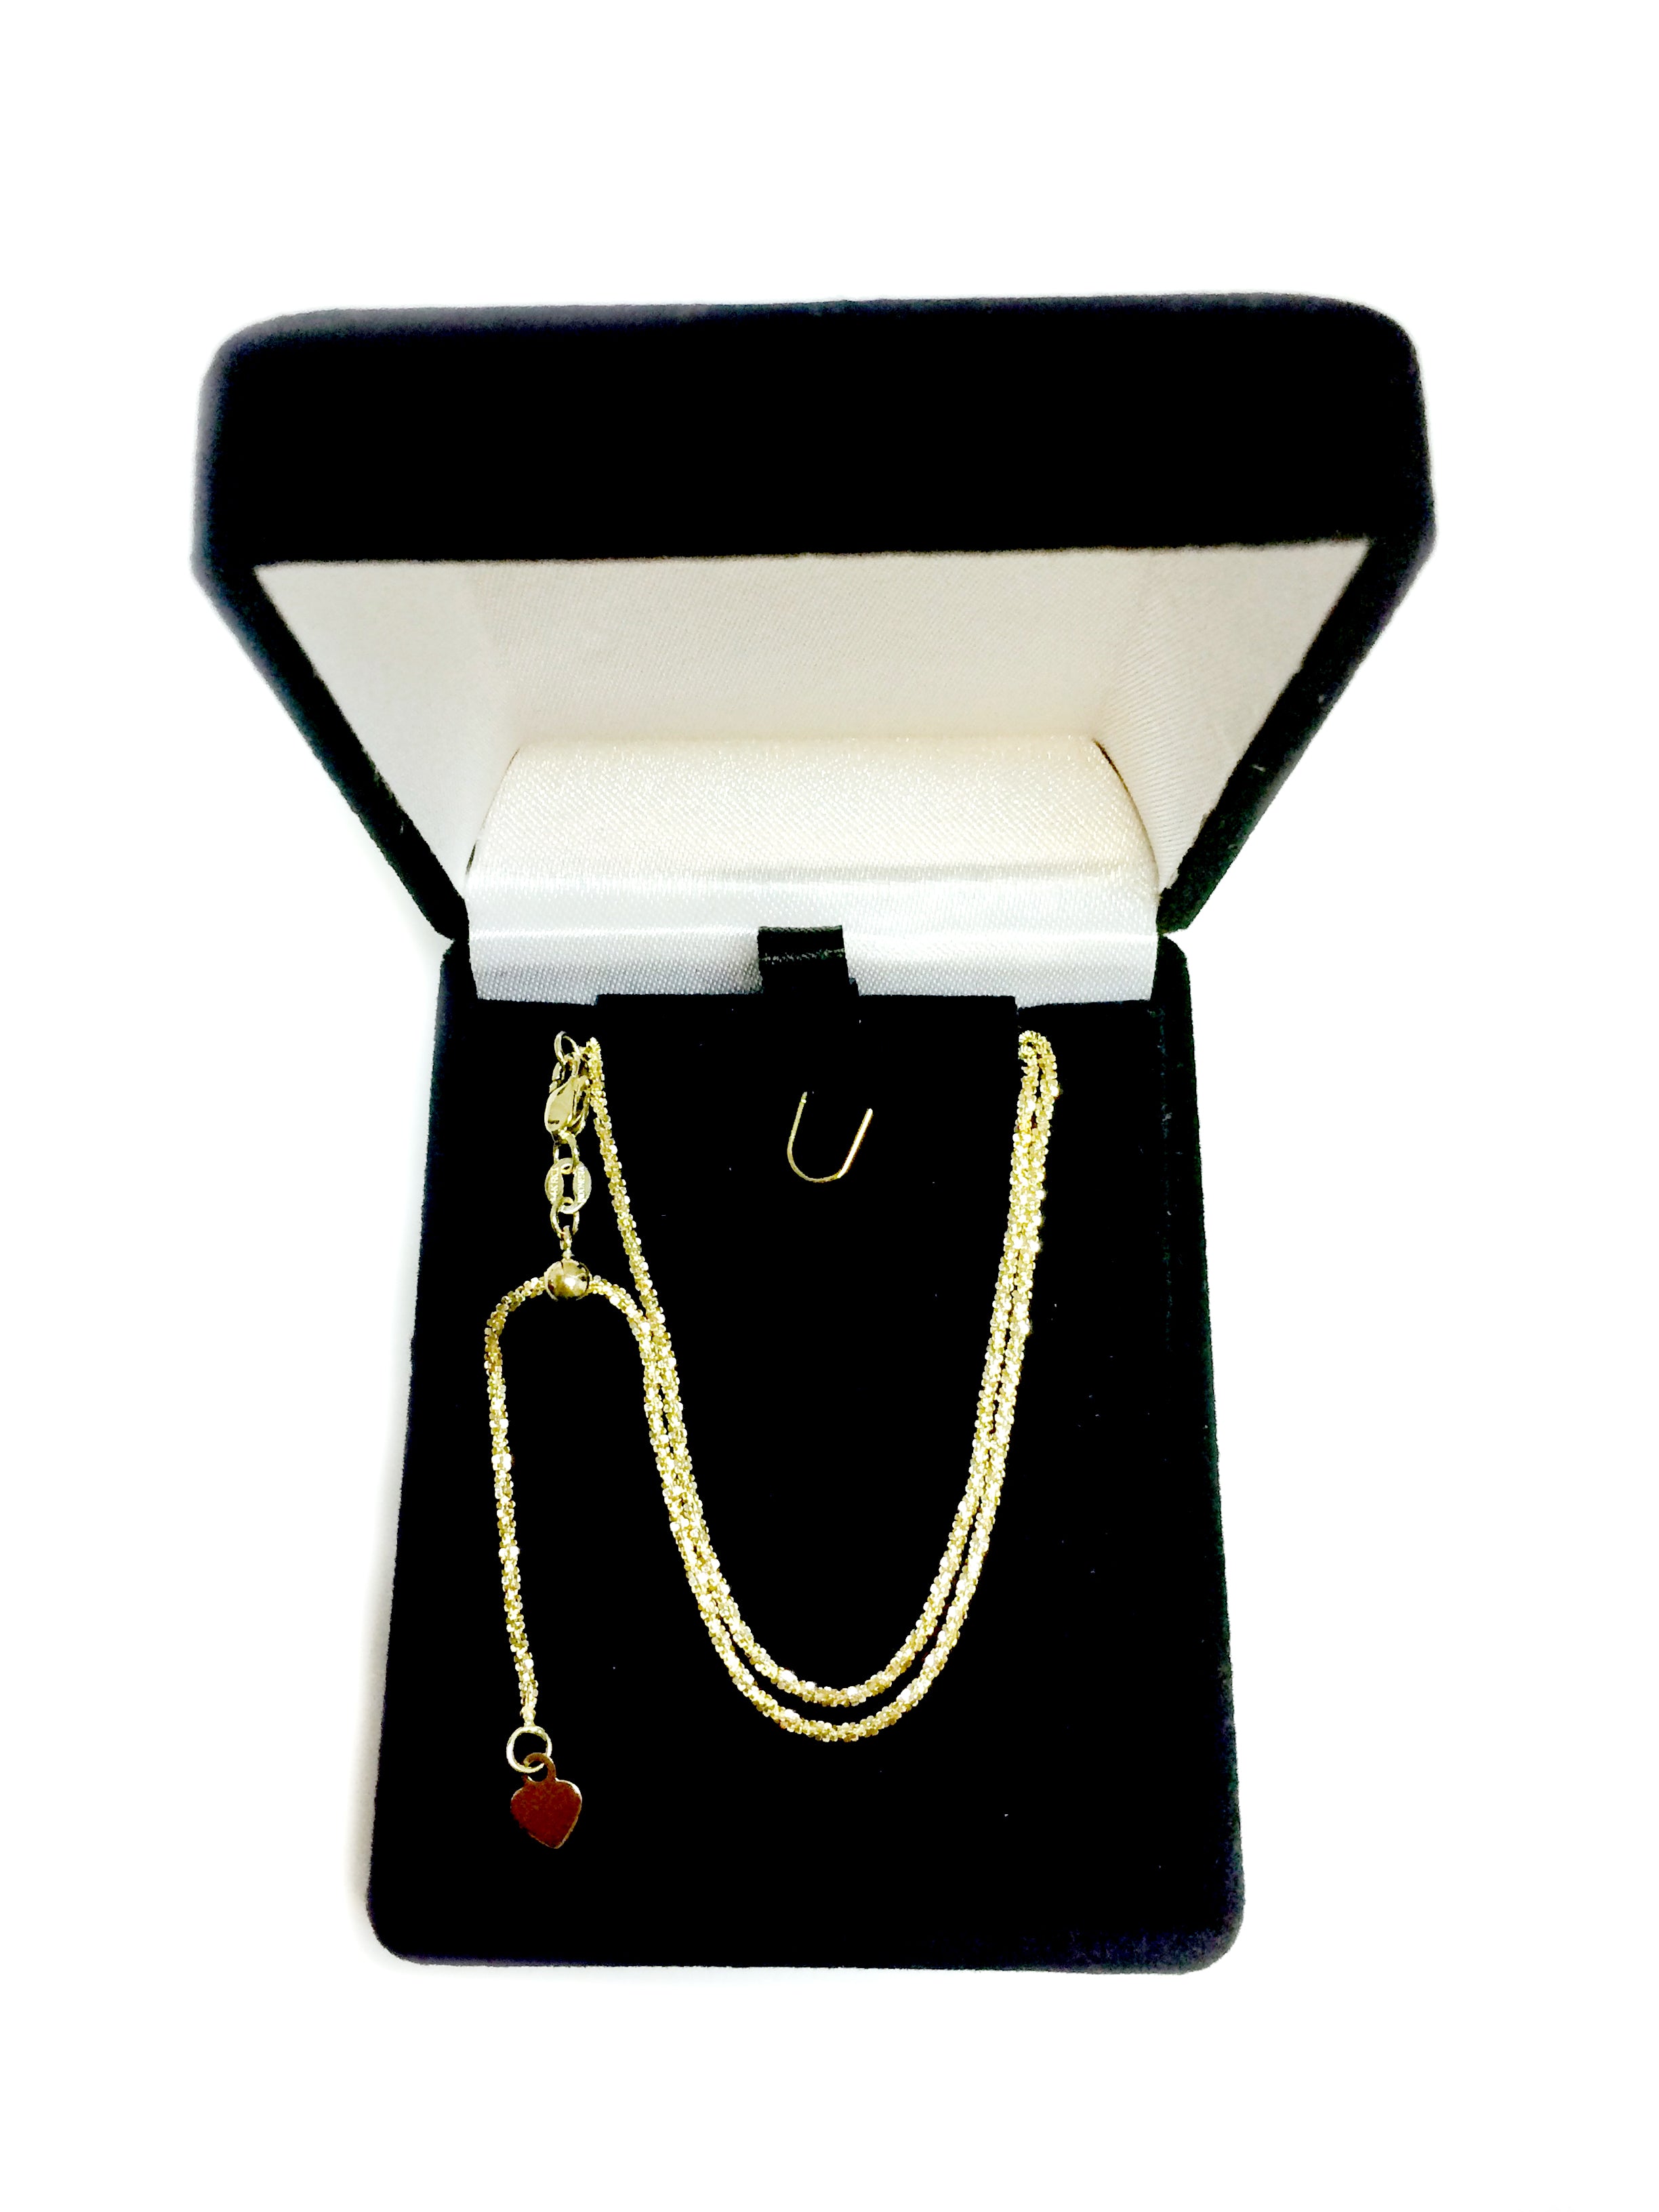 10k gul guld justerbar Sparkle Link Chain halskæde, 1,5 mm, 22" fine designersmykker til mænd og kvinder